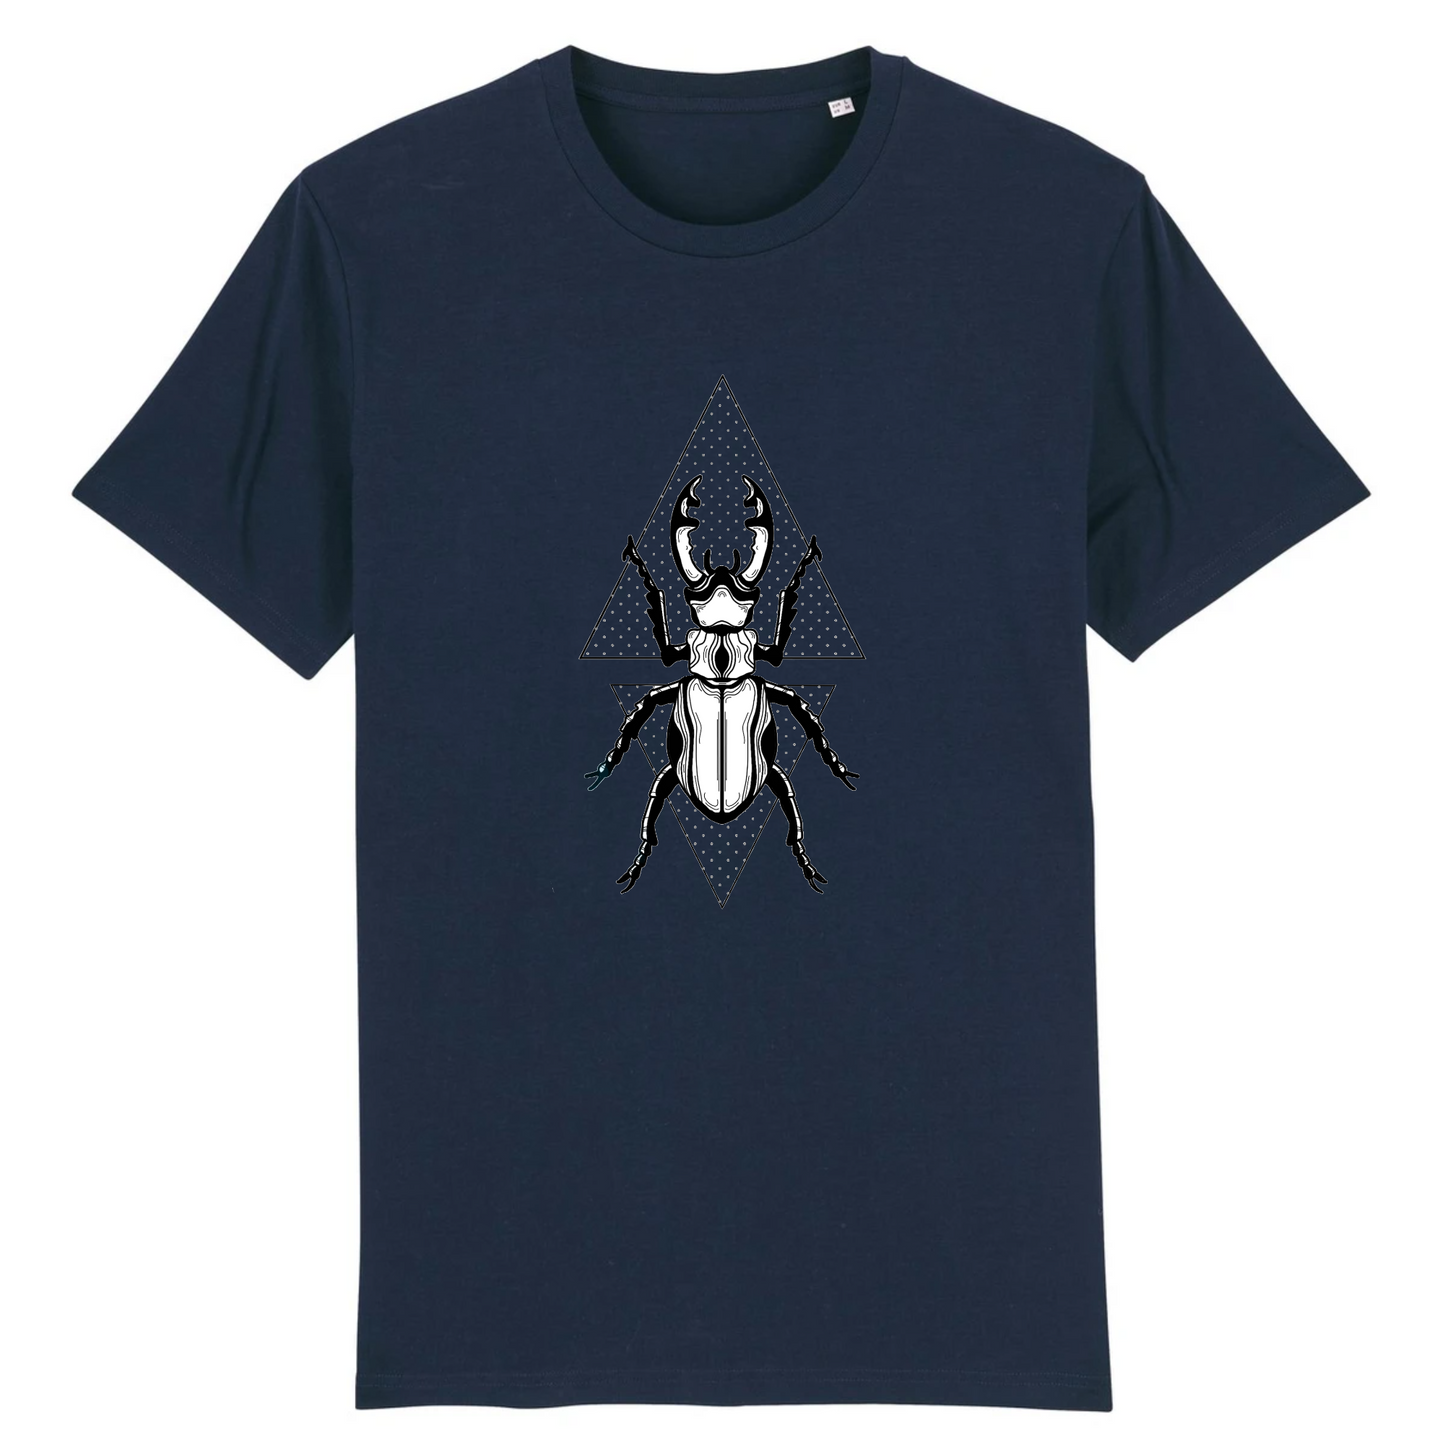 T-shirt homme coton bio | Graphisme insecte coléoptère | marine